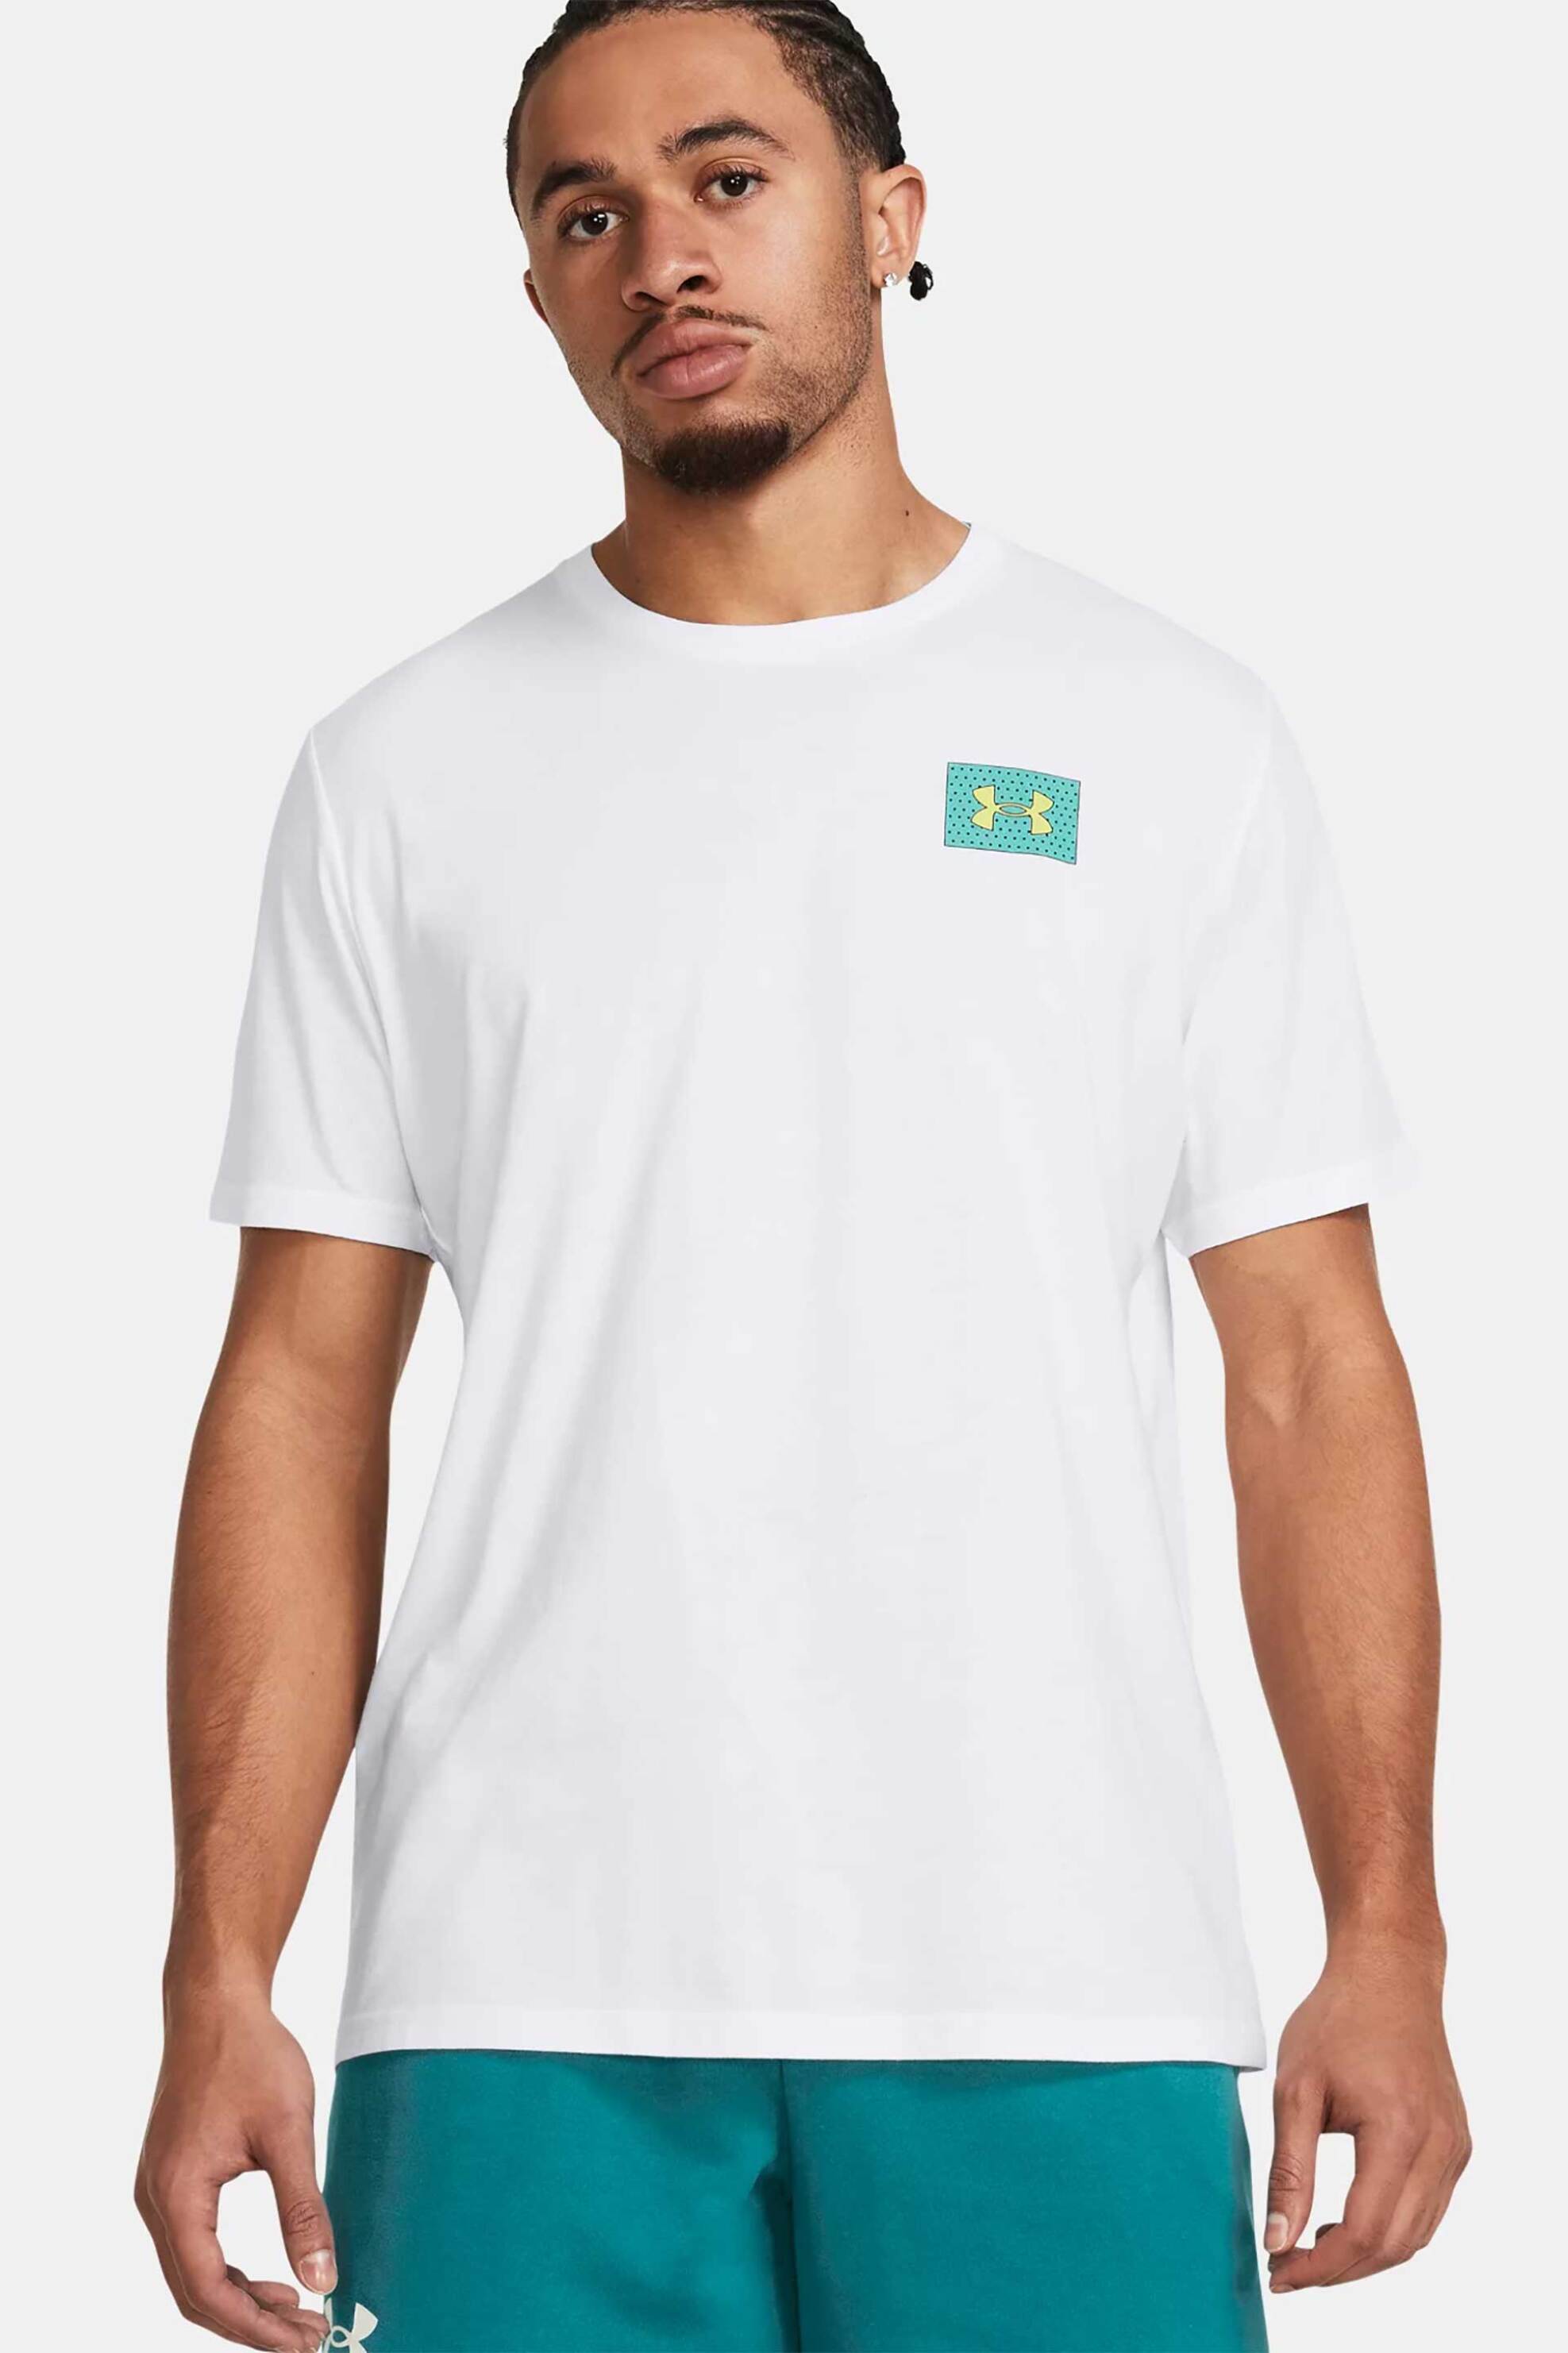 Ανδρική Μόδα > Ανδρικά Αθλητικά > Ανδρικά Αθλητικά Ρούχα > Αθλητικές Μπλούζες > Ανδρικά Αθλητικά T-Shirts Under Armour ανδρικό T-shirt με graphic logo print στο πίσω μέρος Loose Fit - 1382828 Λευκό